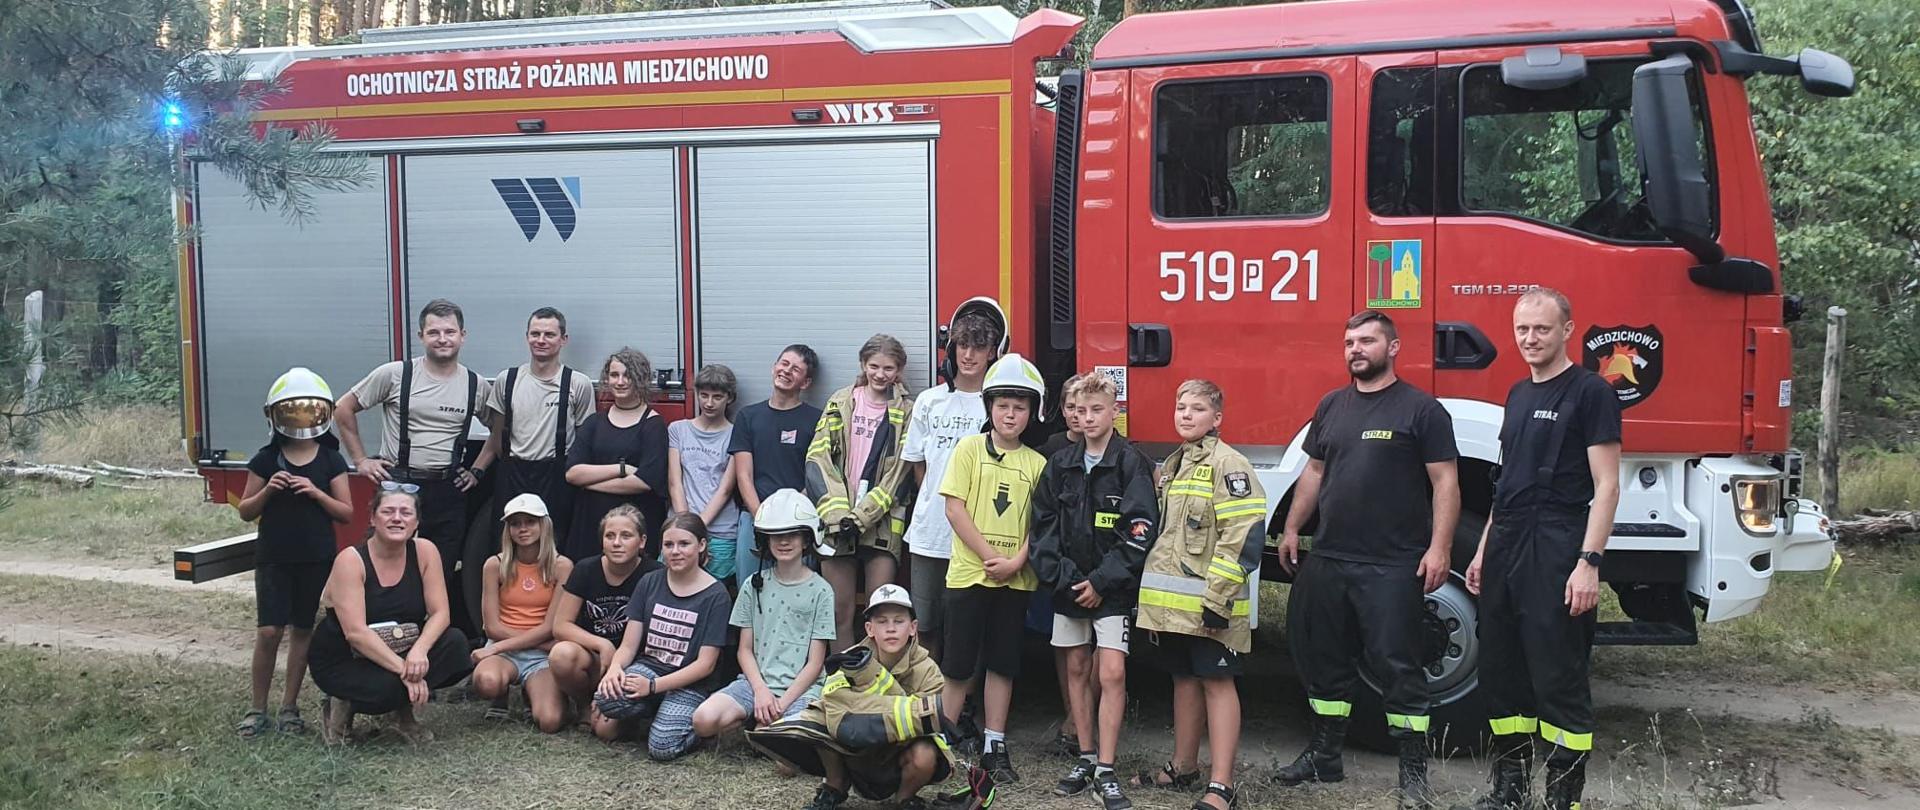 Zdjęcie grupowe dzieci wraz ze strażakami na tle wozu bojowego.